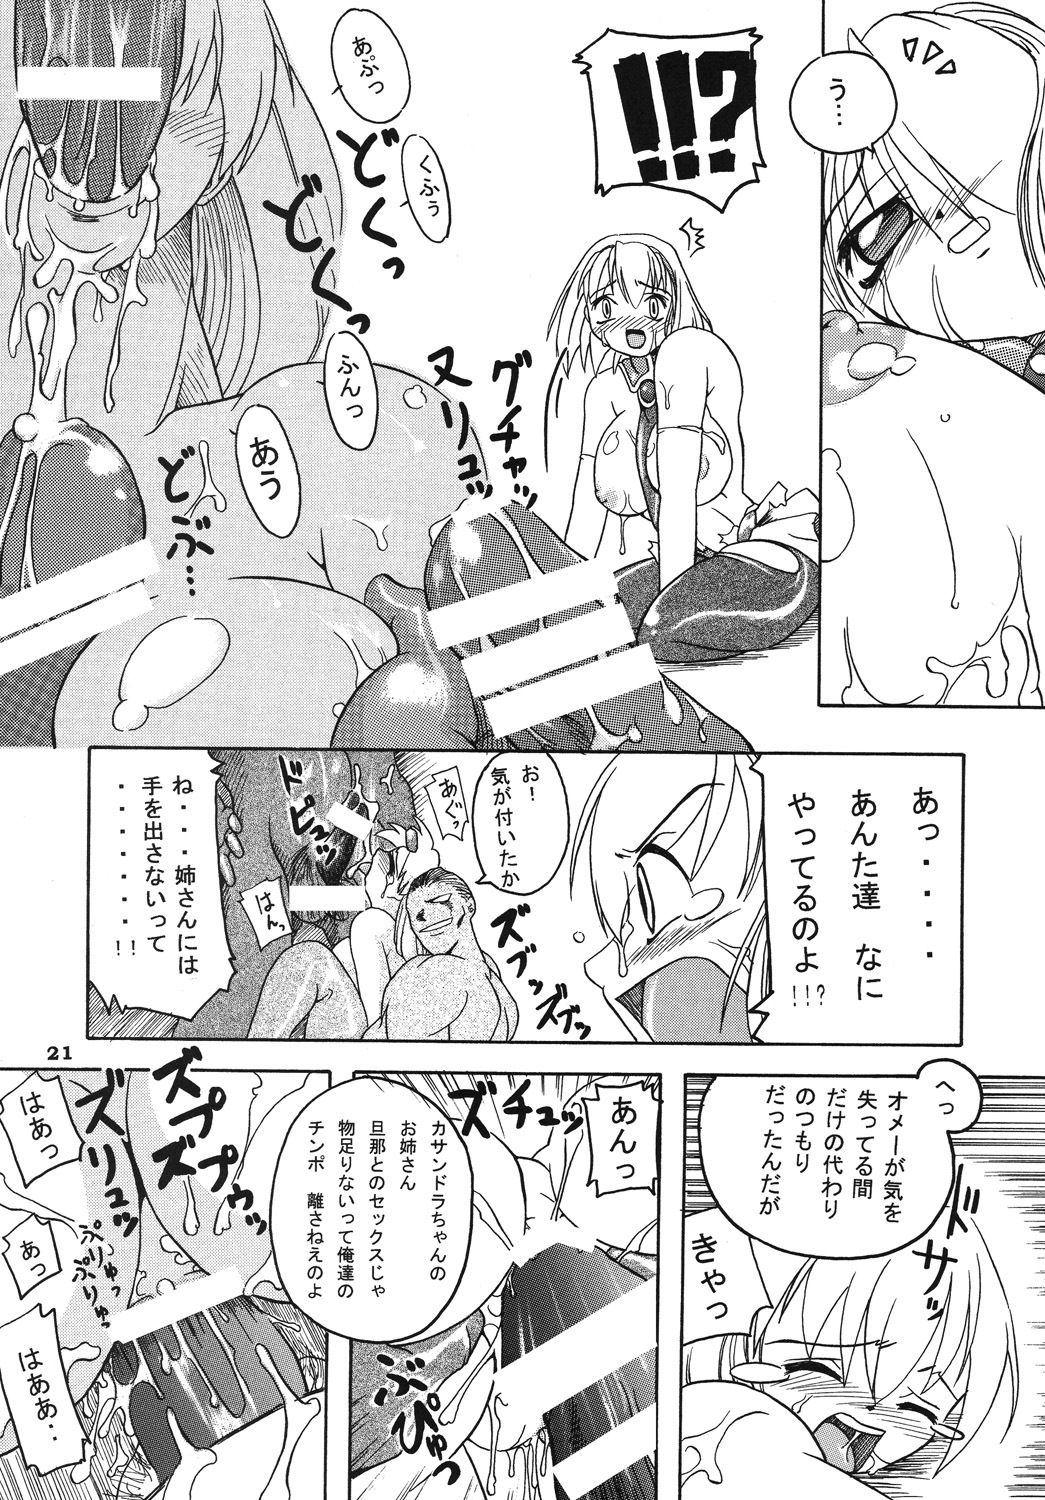 [Furuya (TAKE)] Seisenshi no Matsuro (SoulCalibur) [2005-01-18] page 20 full